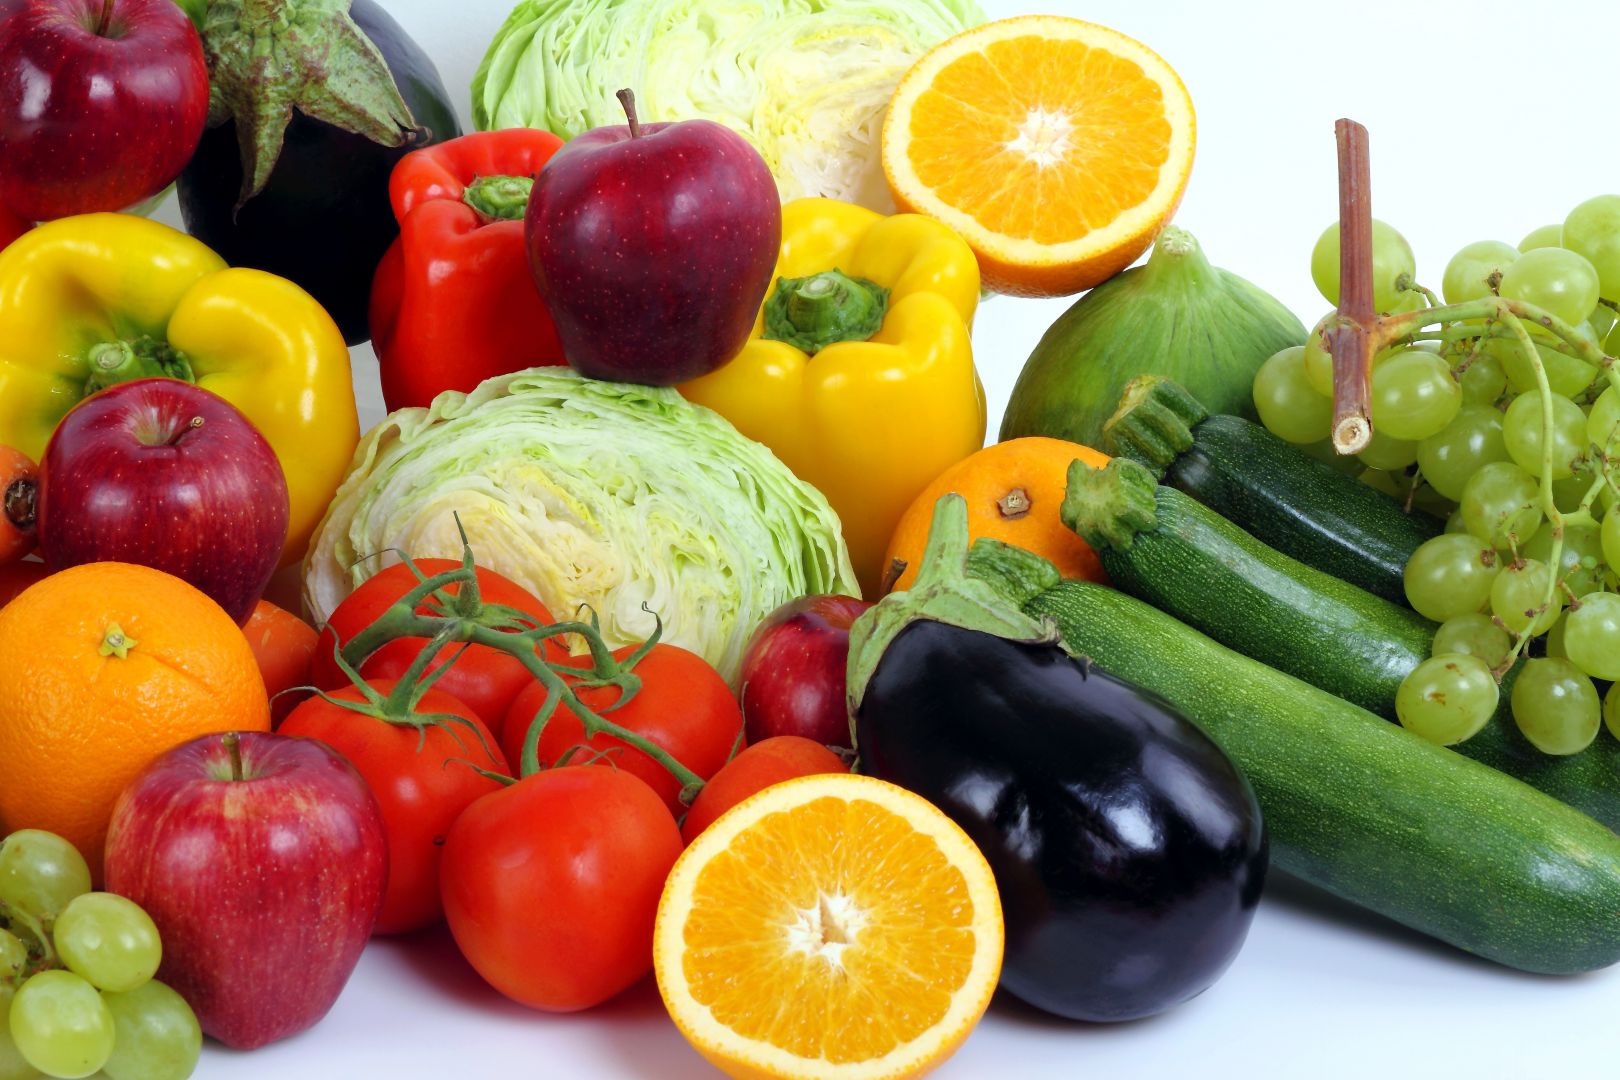 Zakázka na zajištění dodávky ovoce a zeleniny (Ovoce a zelenina) - Chrudim